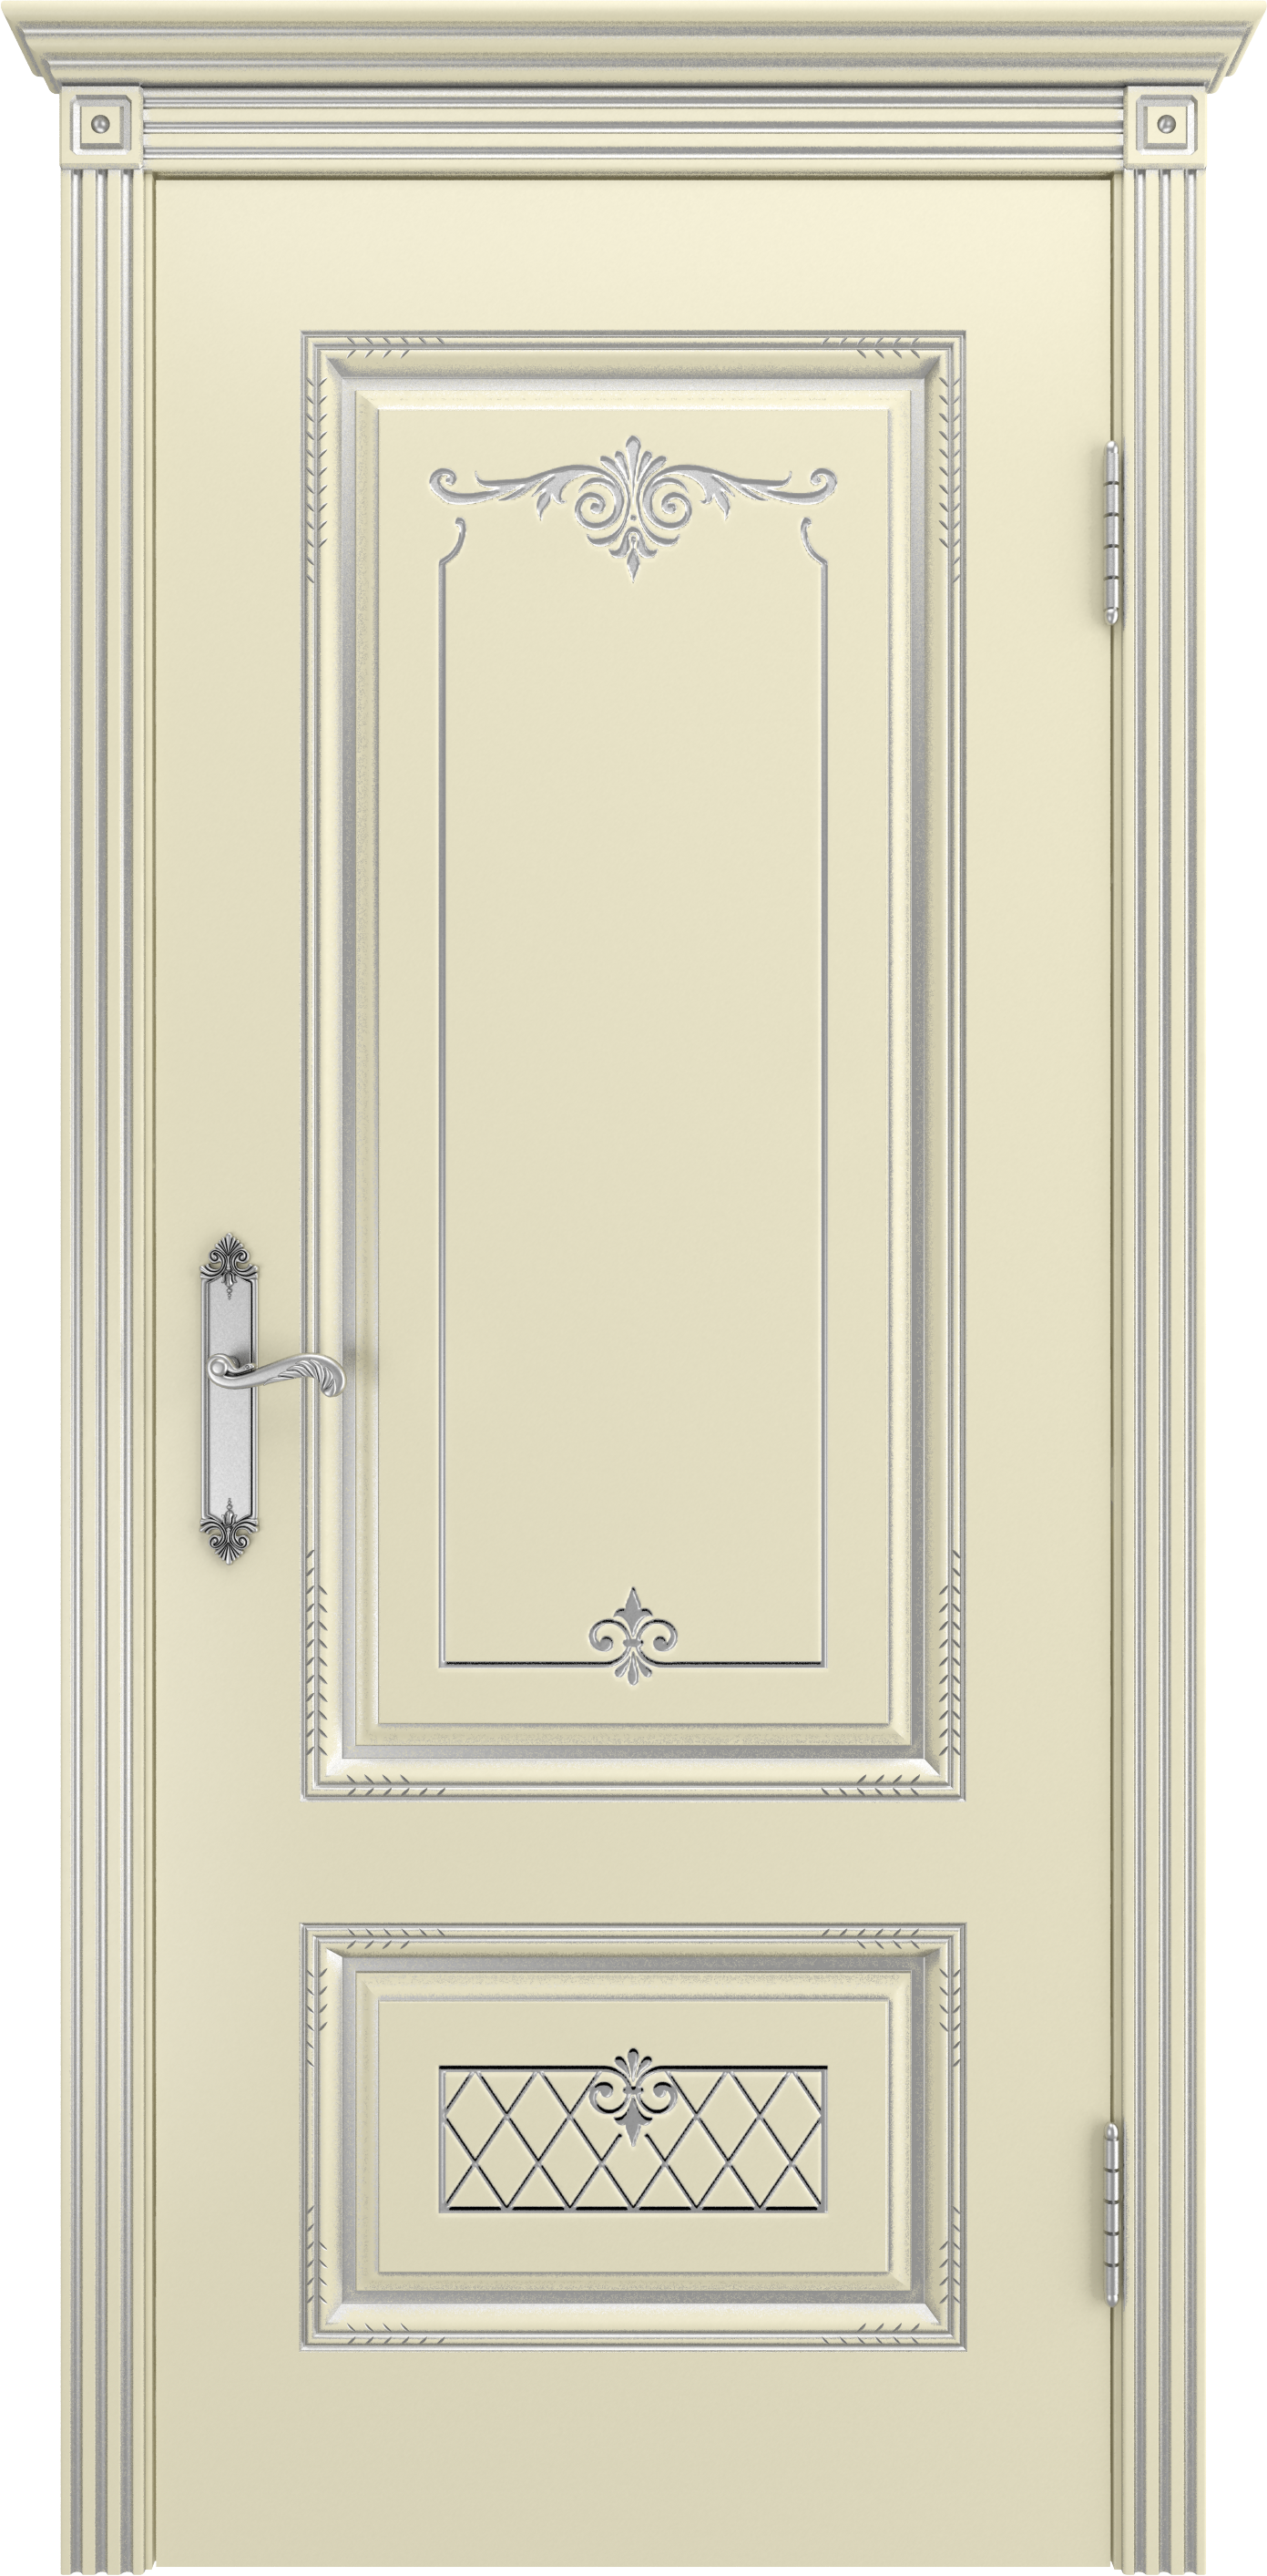 Серия Классика - Межкомнатная дверь Аккорд В 3 тип Глухая